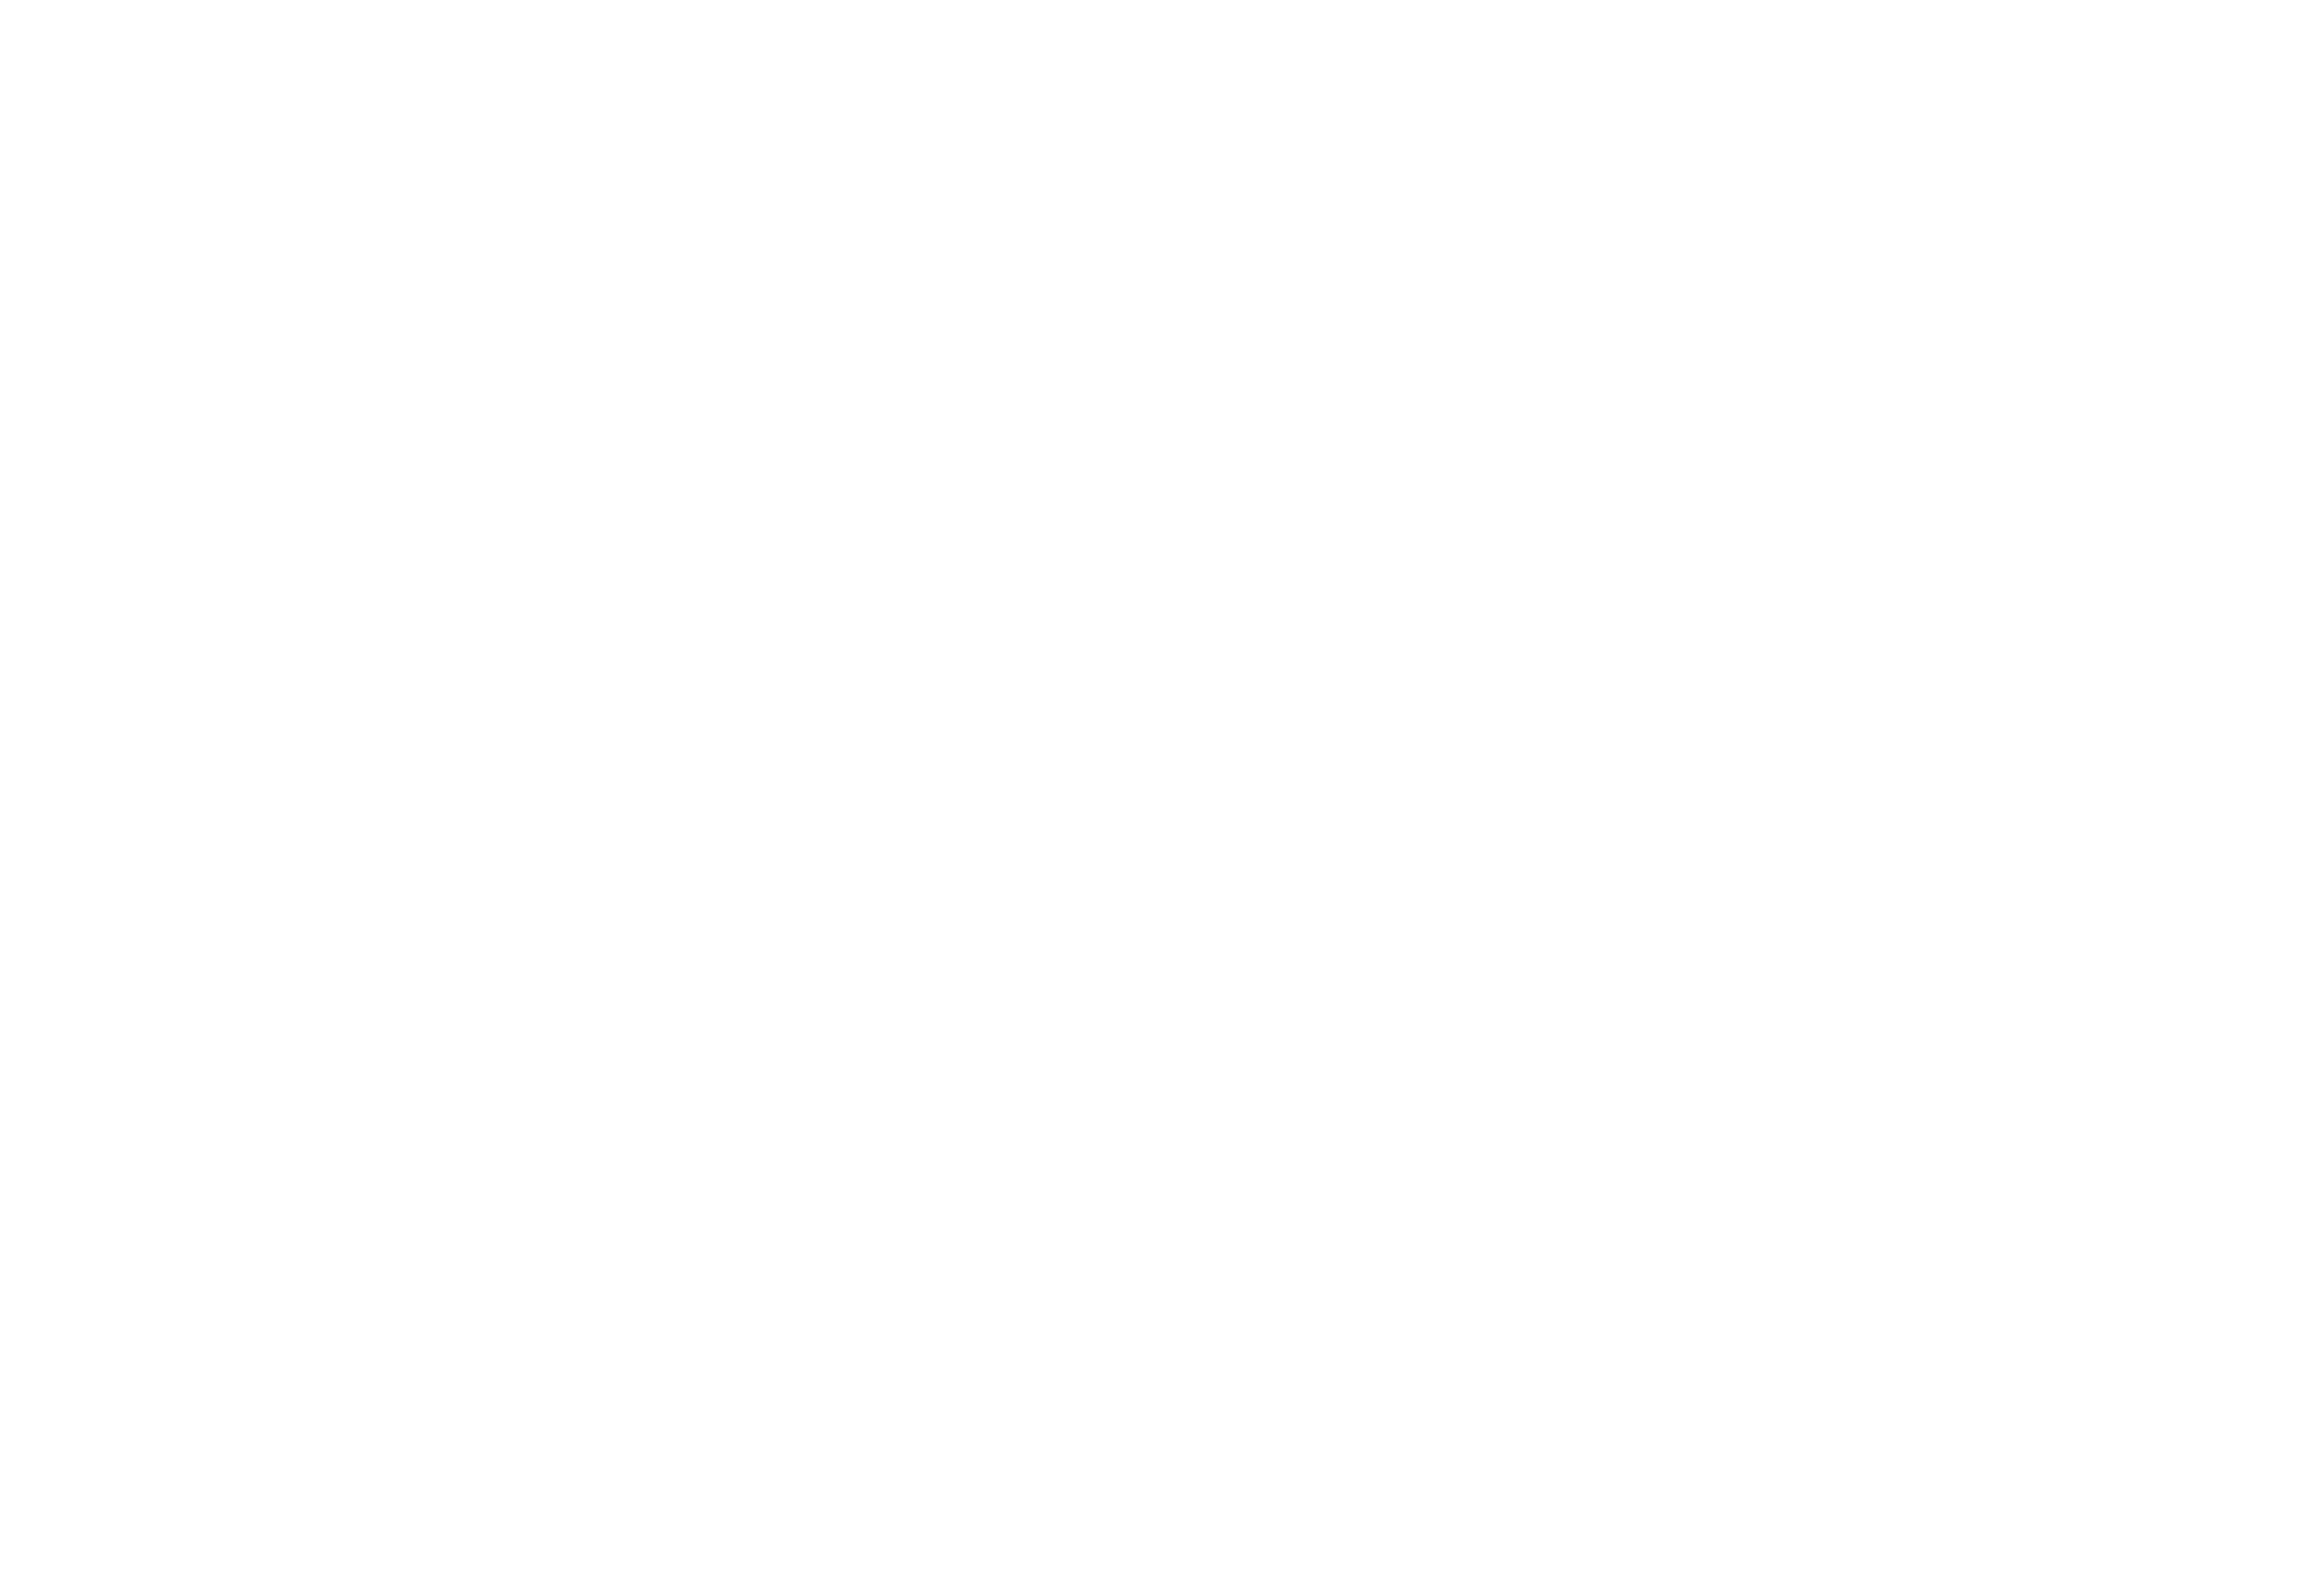 Mariana-Tek-logo